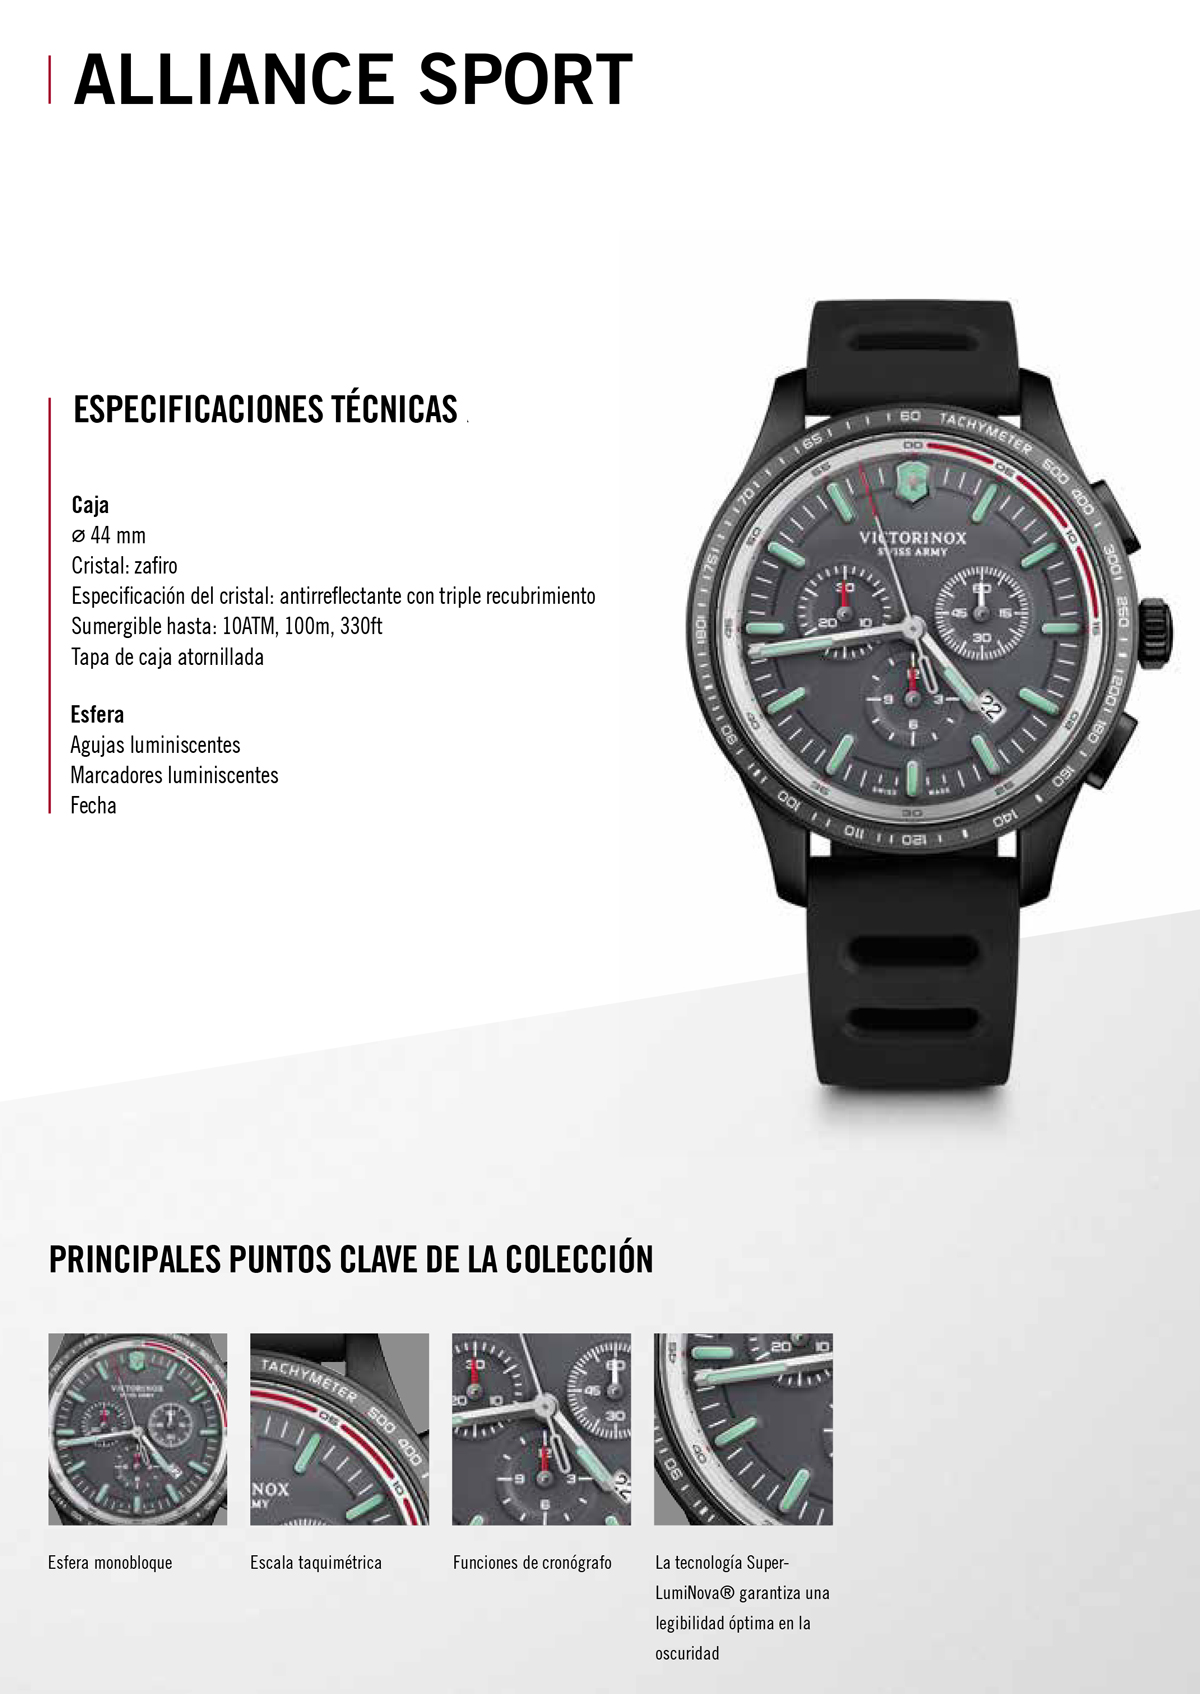 donde comprar online Reloj Victorinox V241818 Alliance Sport Joyeria Marga Mira Relojeria en Alicante tienda relojes alicante